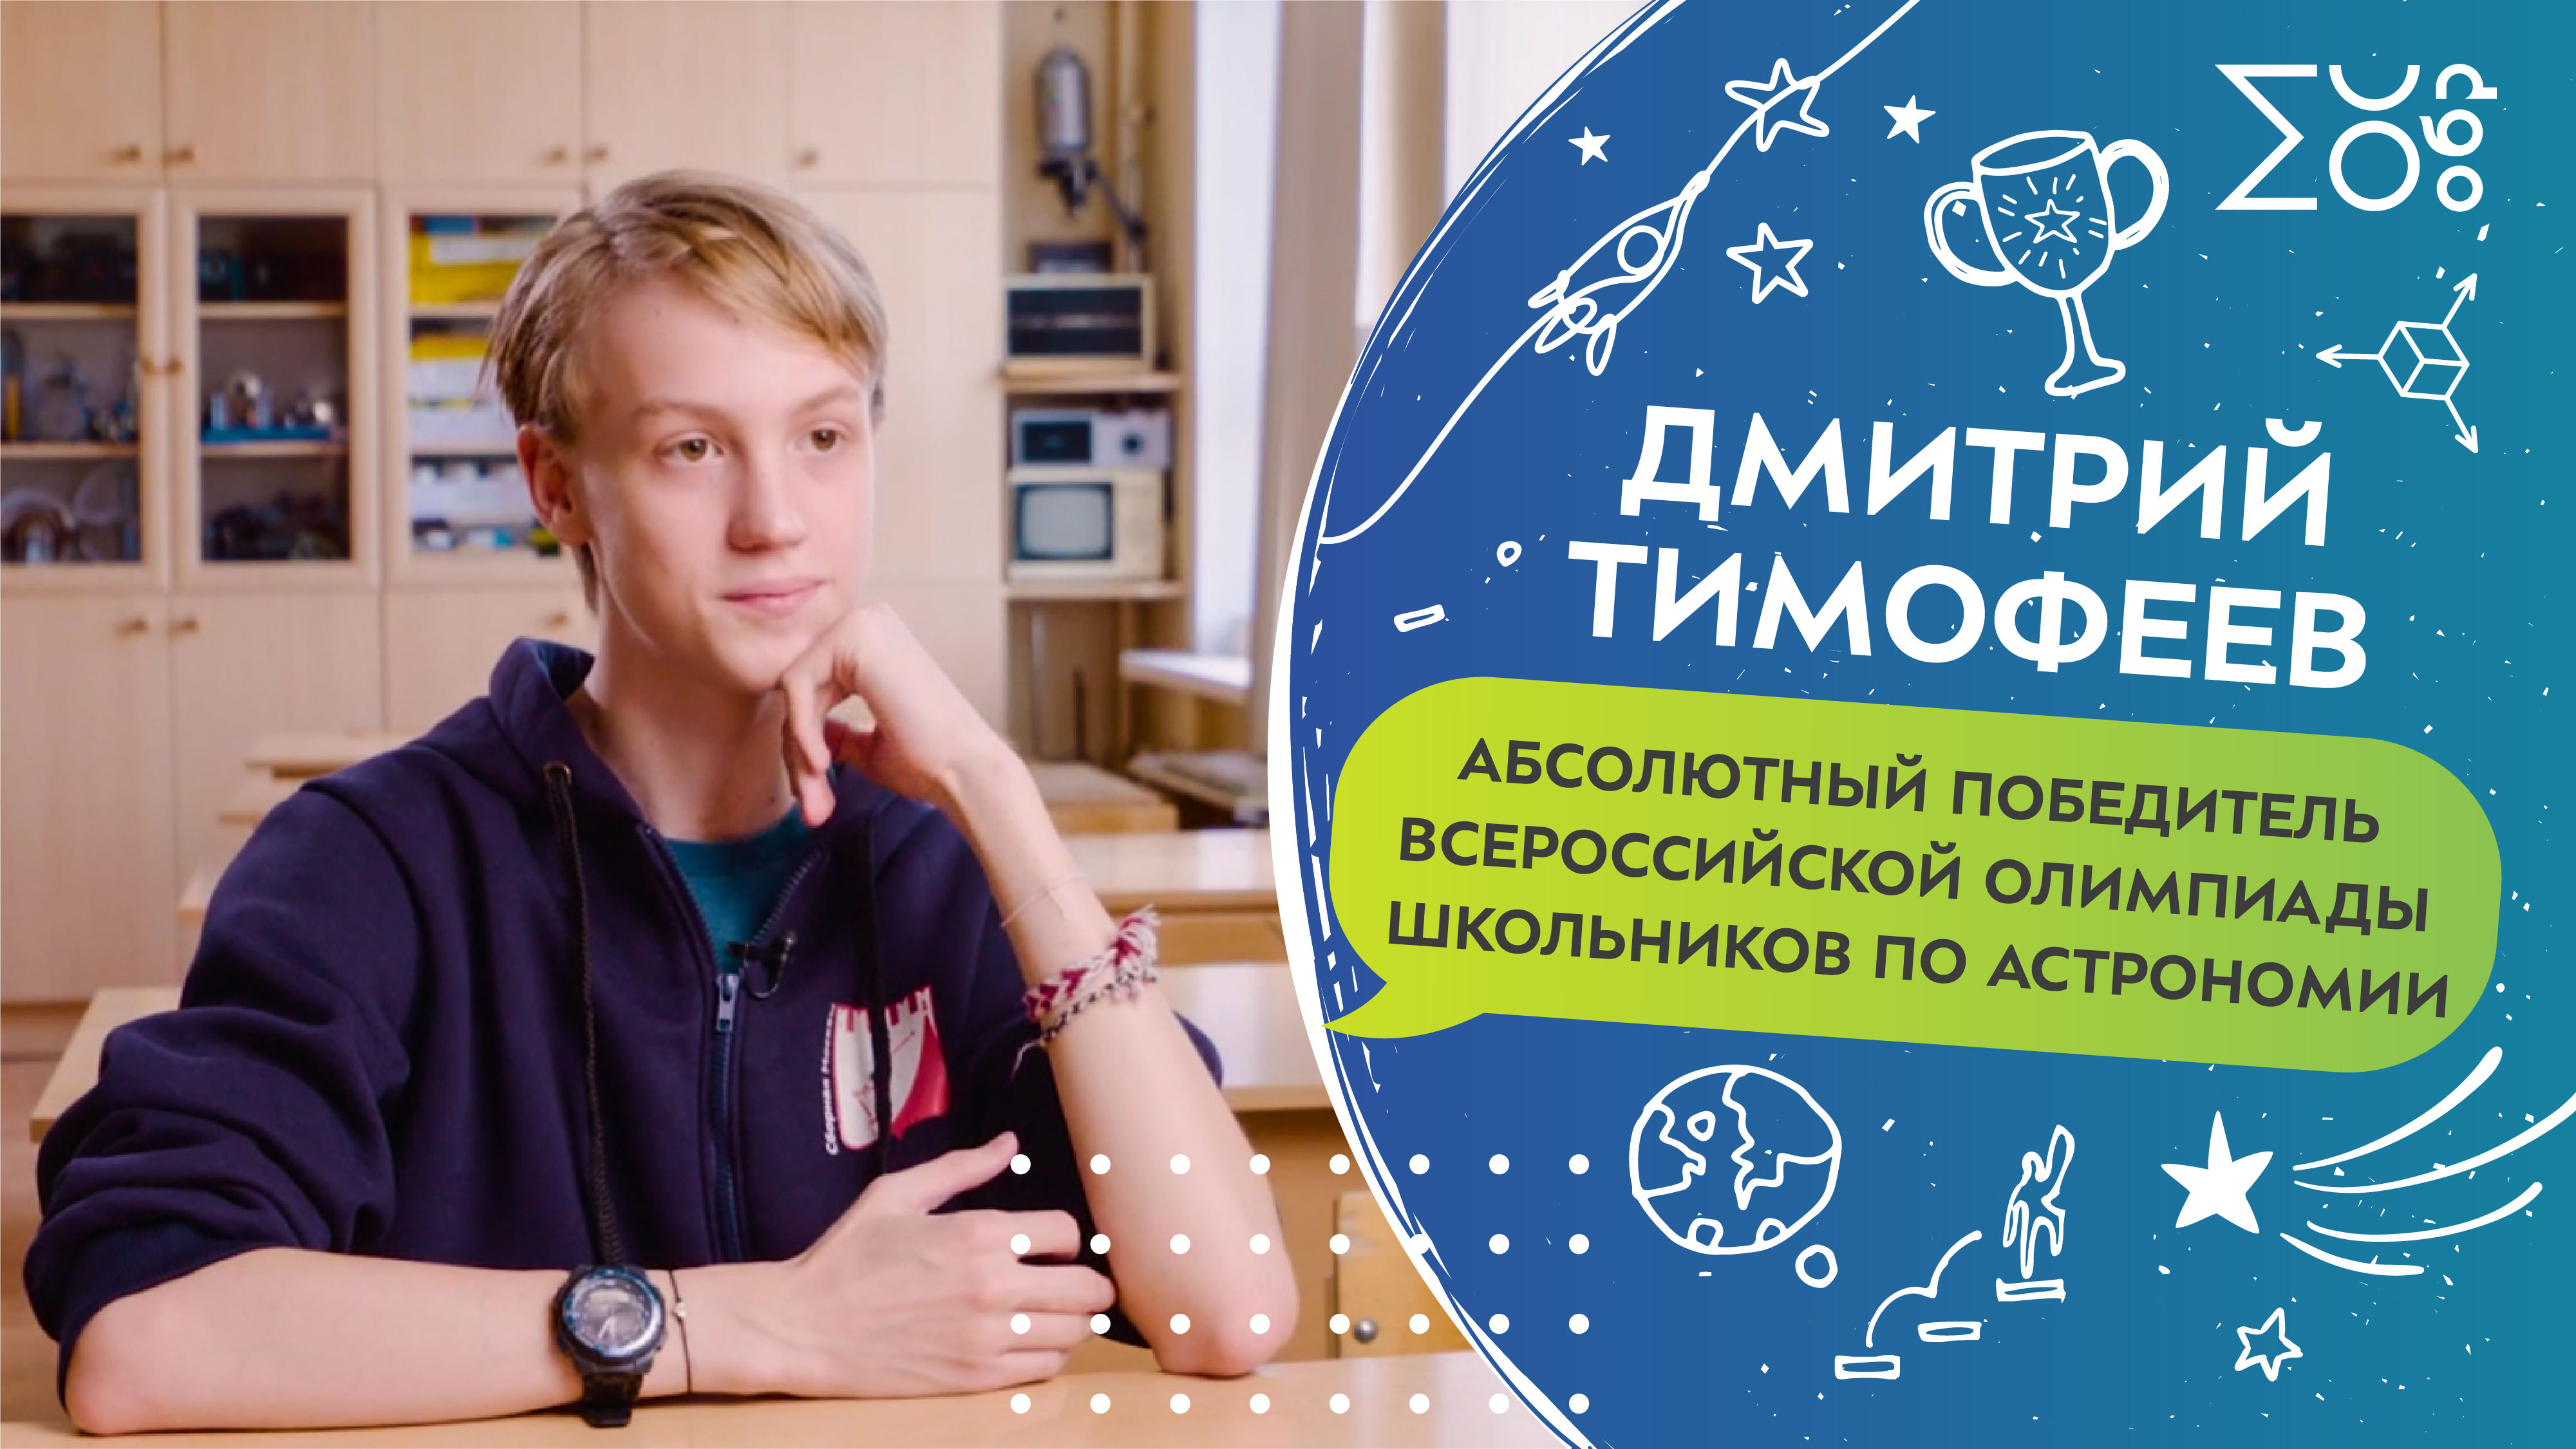 Дмитрий Тимофеев, абсолютный победитель Всероссийской олимпиады школьников по астрономии